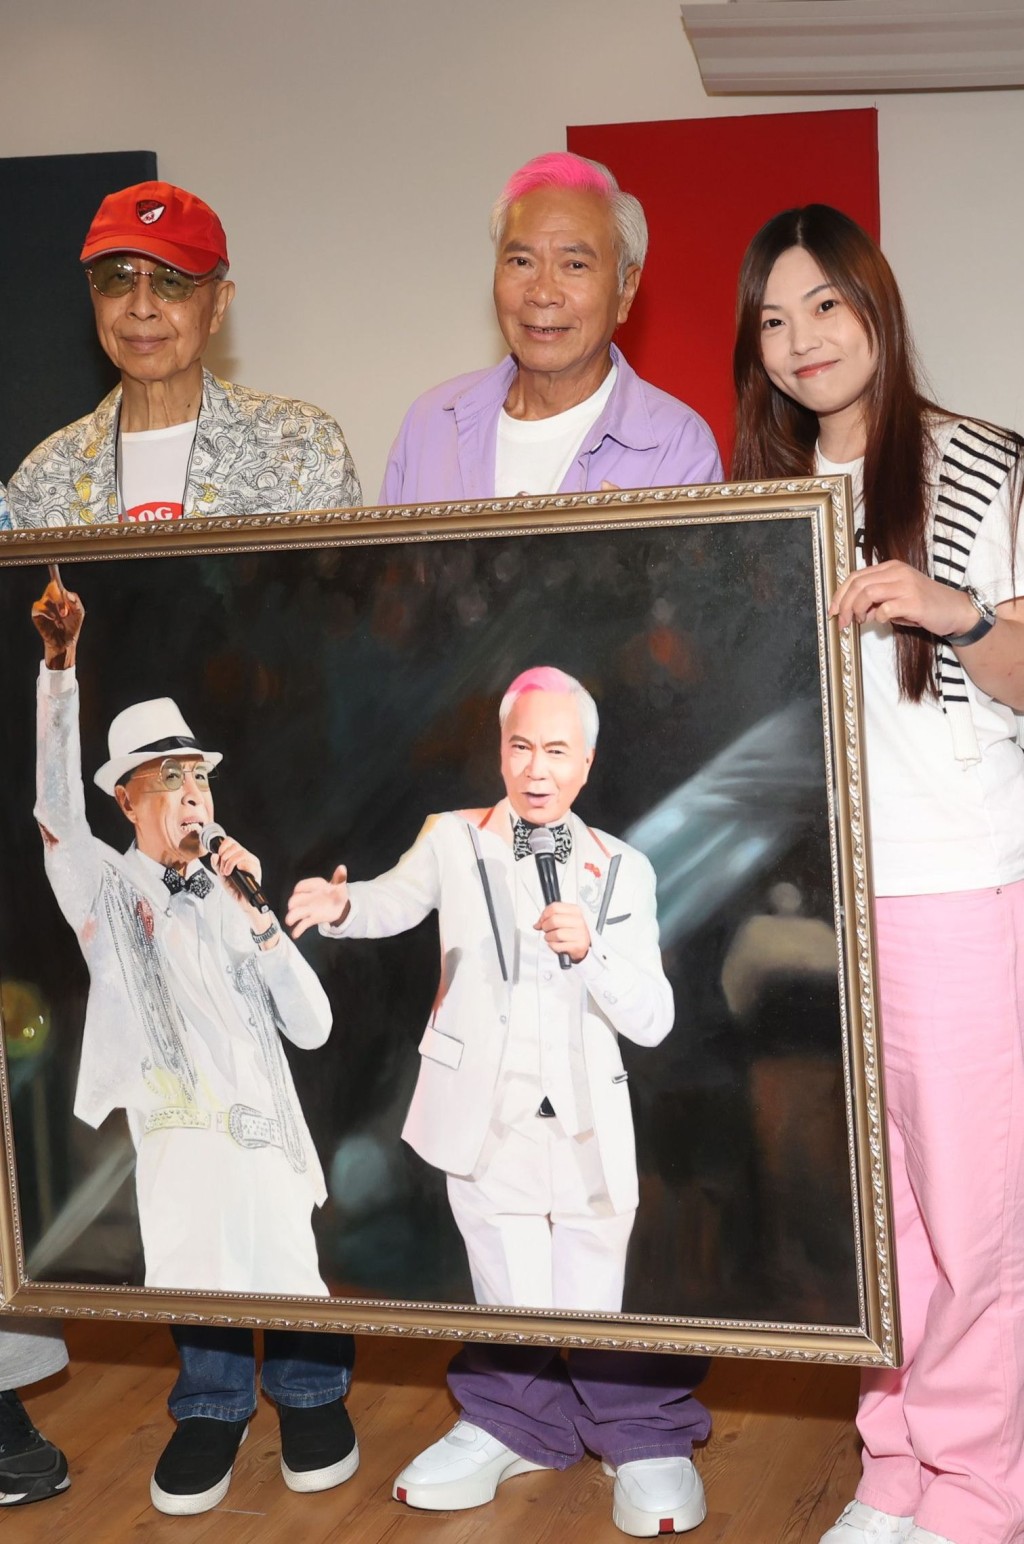 去年7月Chris送人像油画贺老公及叶振棠做《双生双识演唱会》。